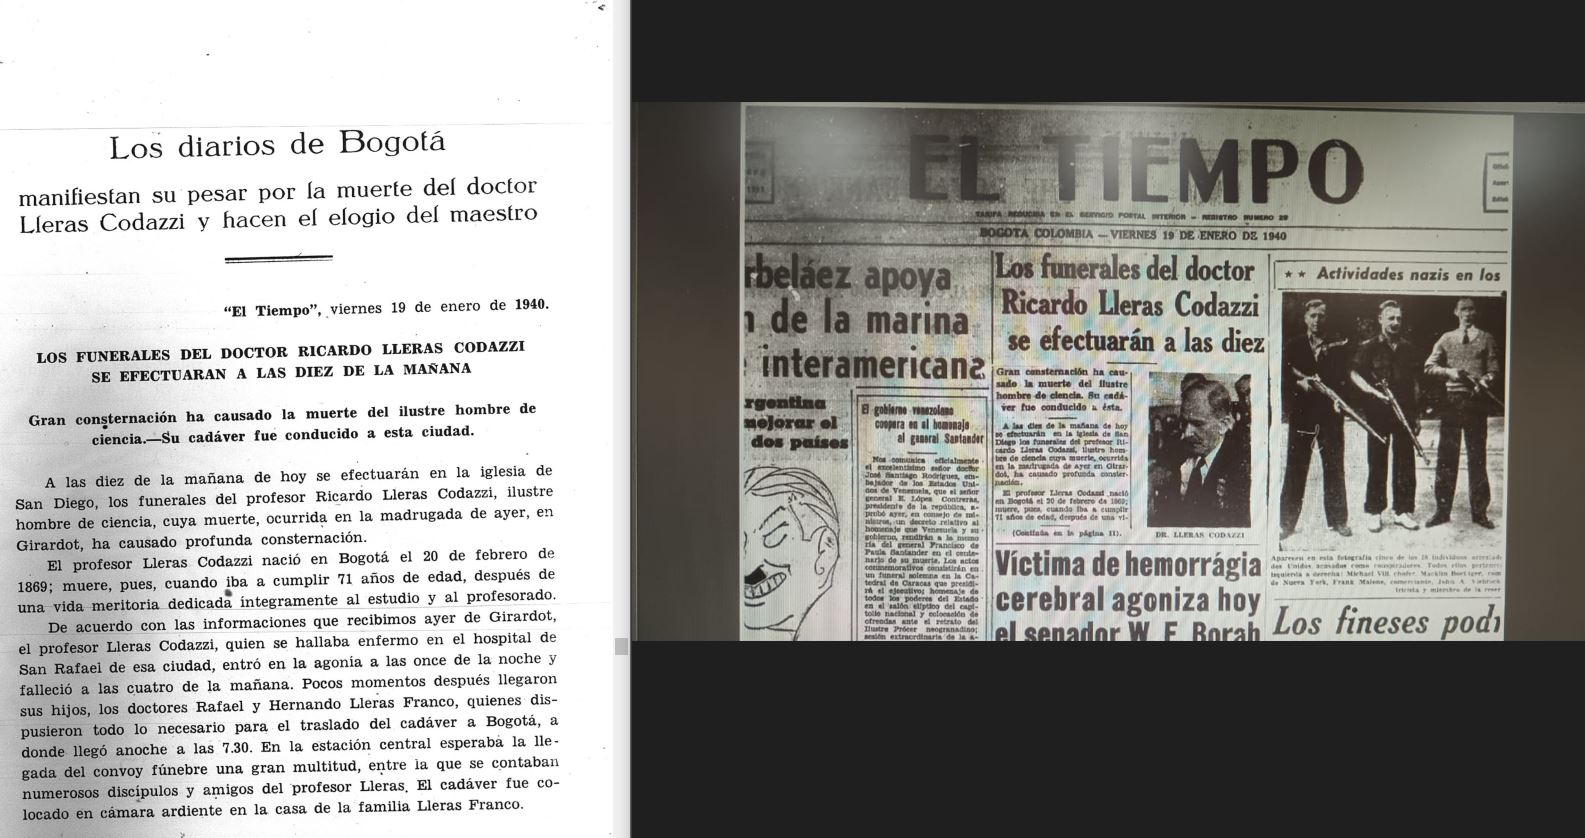 Noticia del periódico El Tiempo y Anales de Ingeniería relacionadas a Ricardo Lleras Codazzi